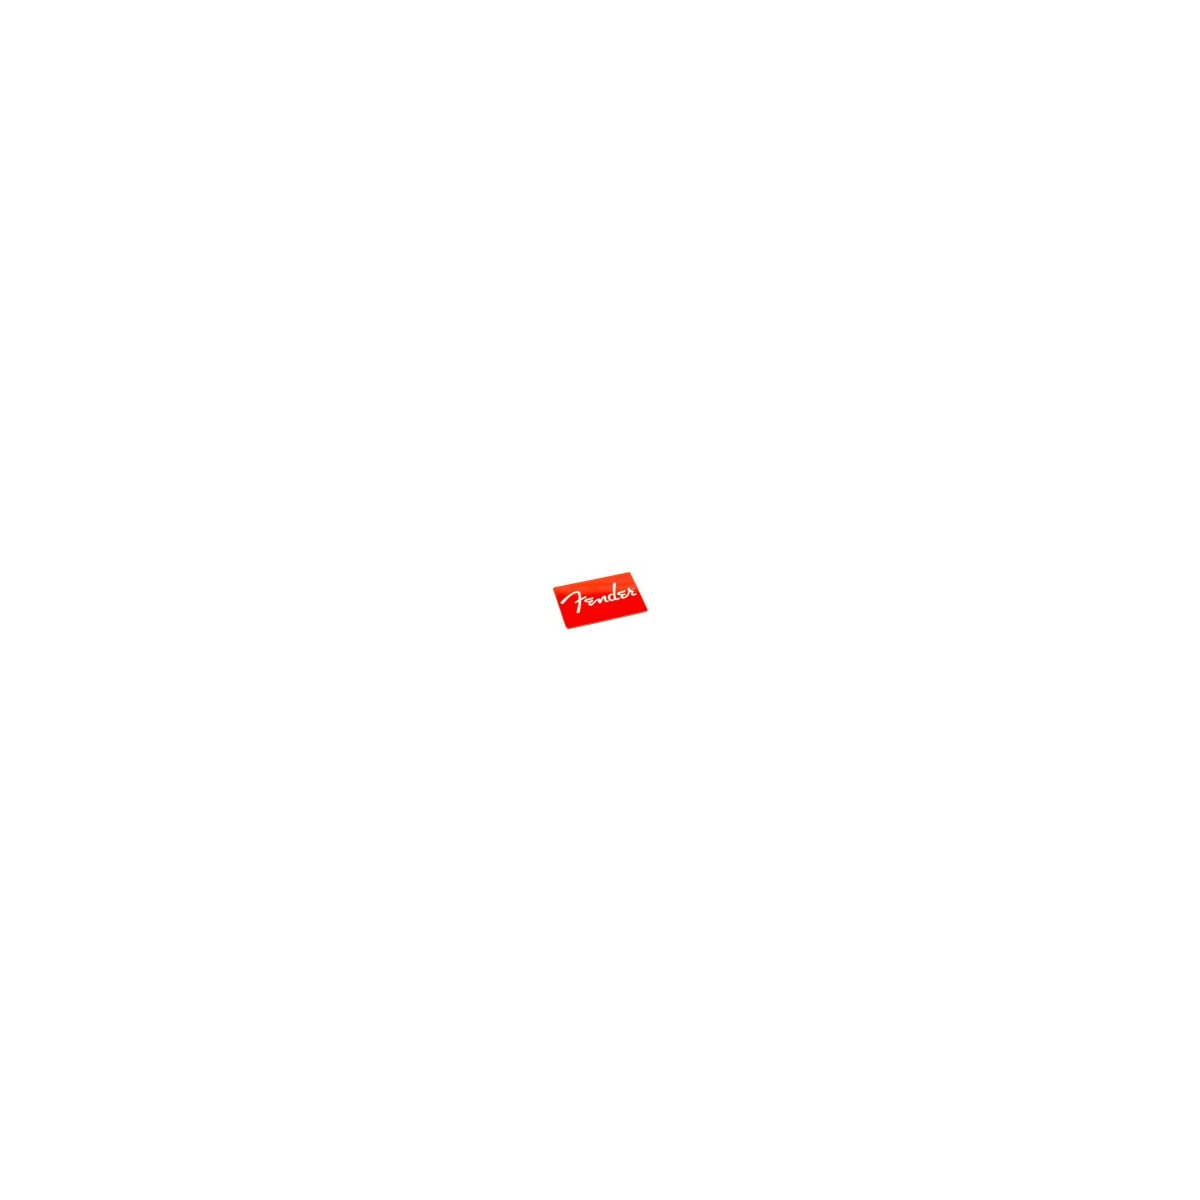 FENDER - aimant avec logo fender rouge